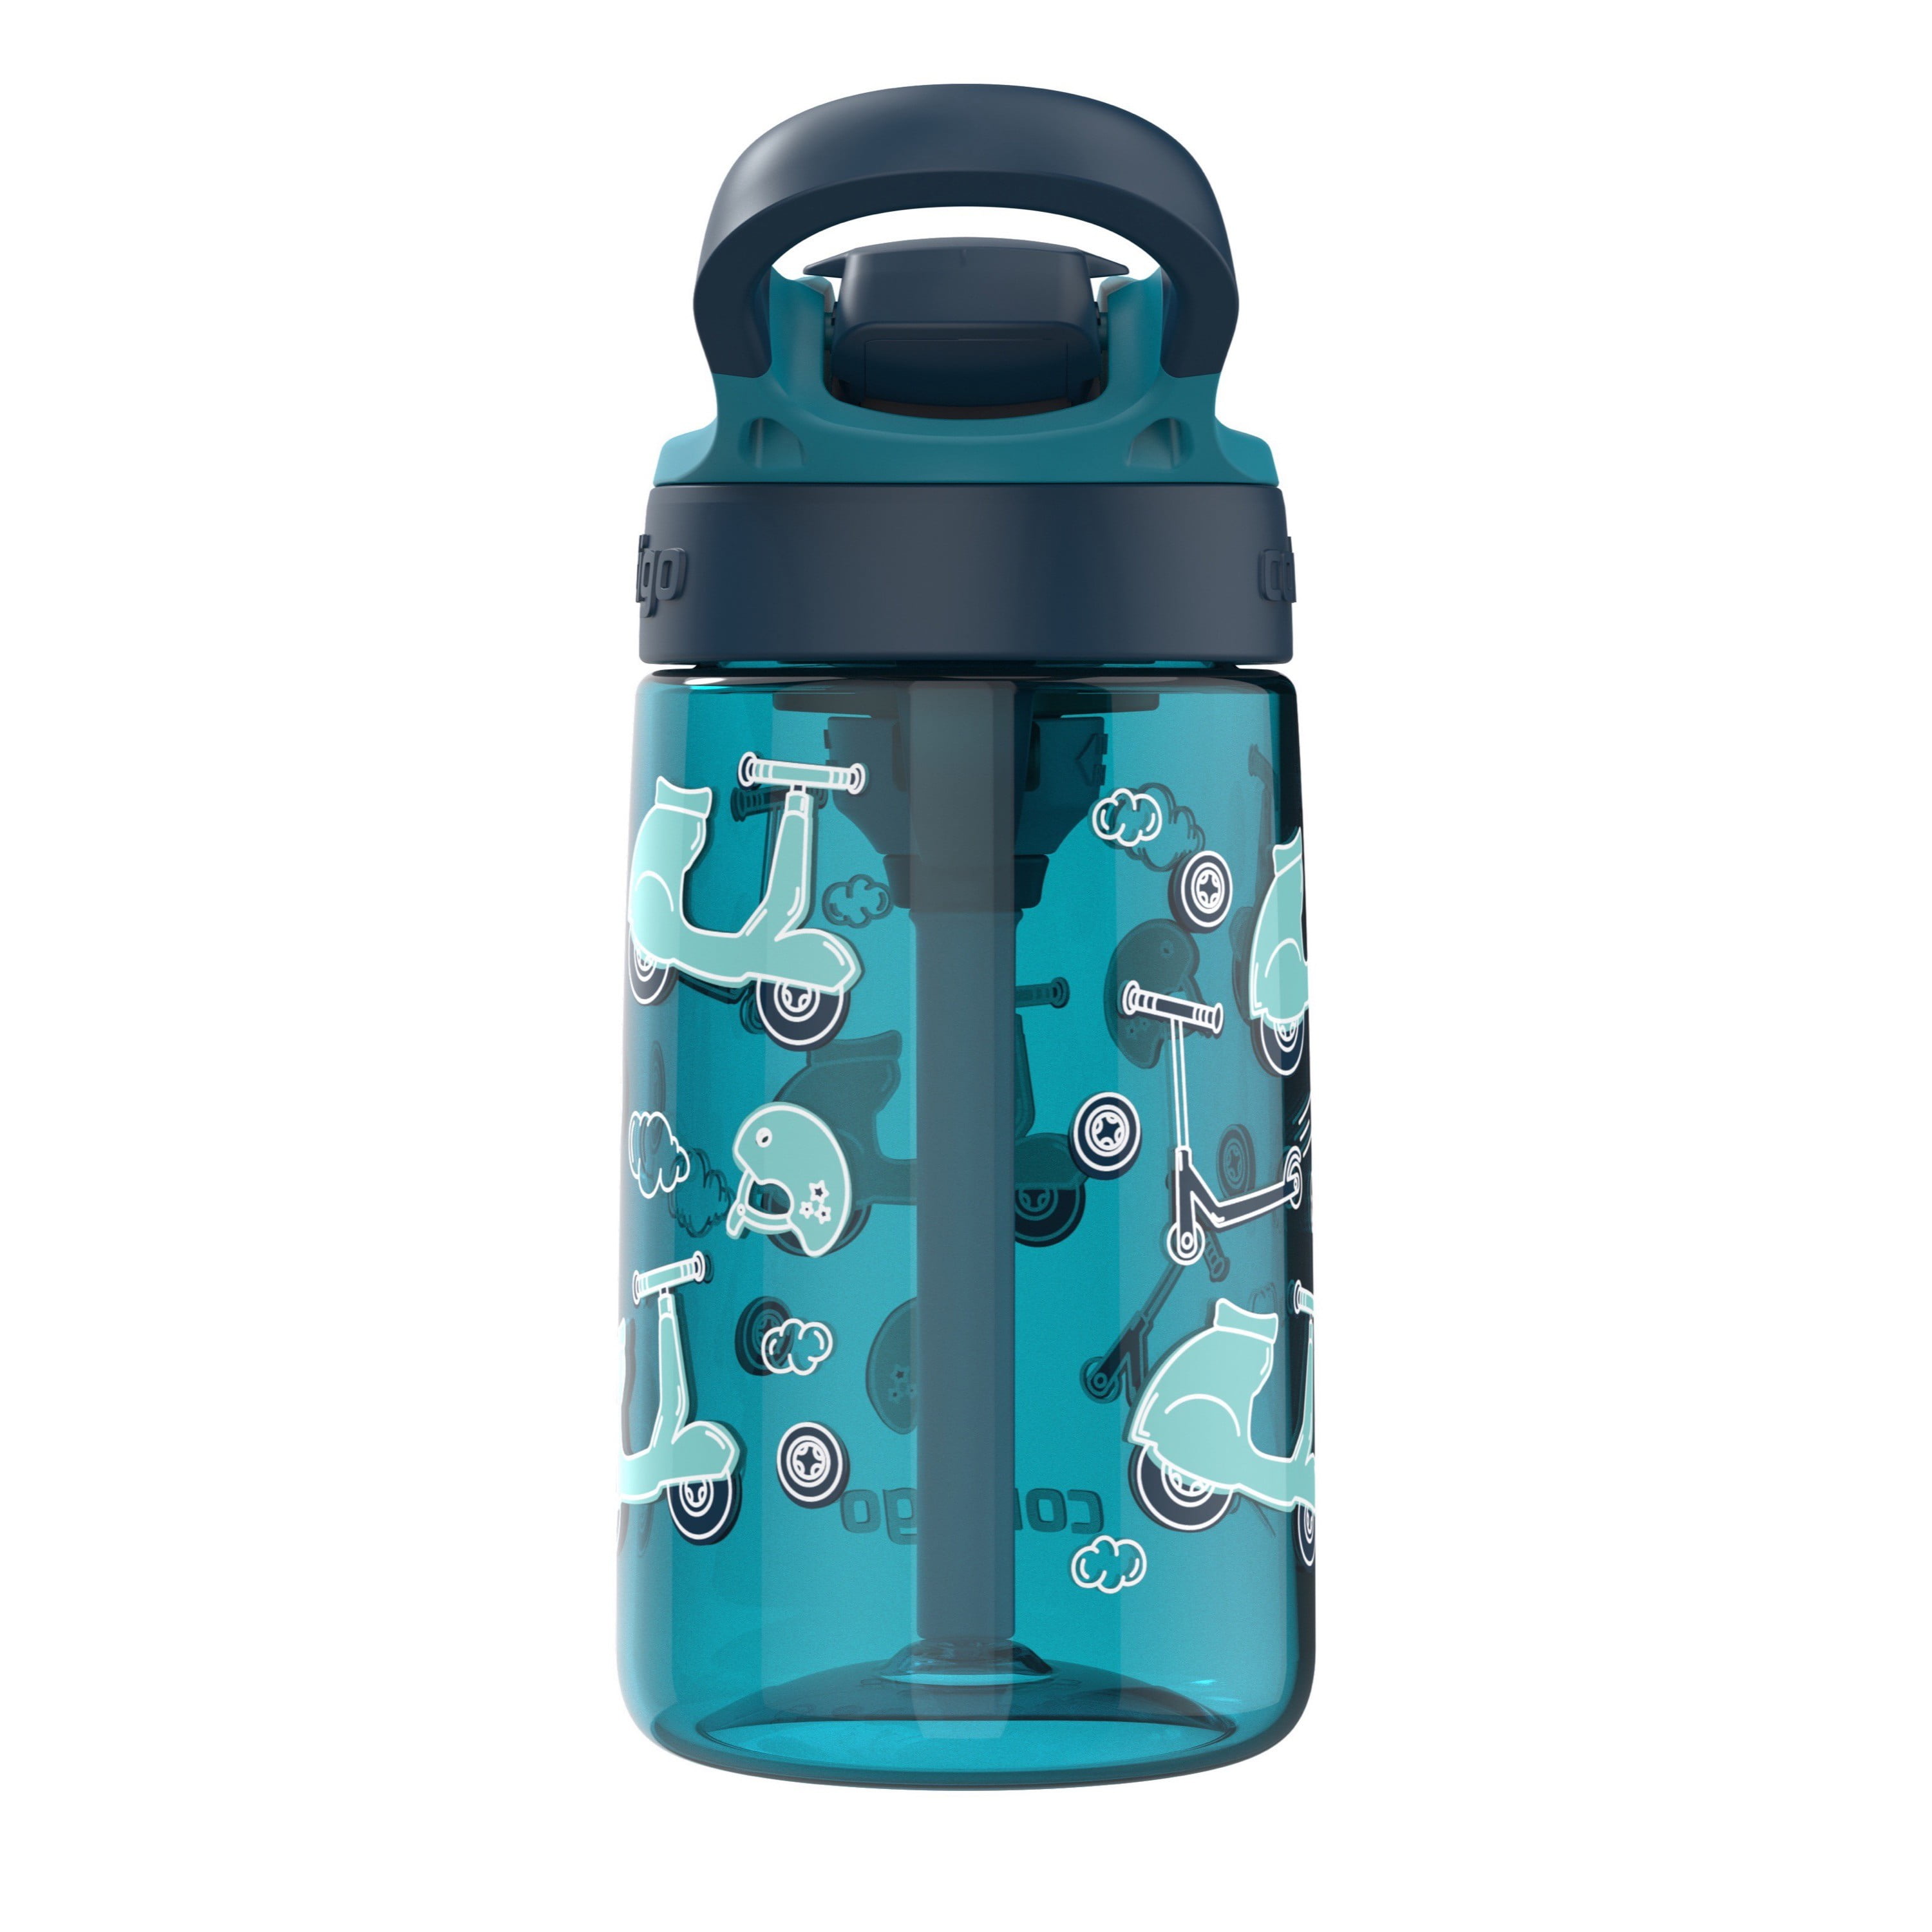 Contigo Aubrey Leak-Proof Spill-Proof Water Bottle with Auto Spout, 14 oz.  